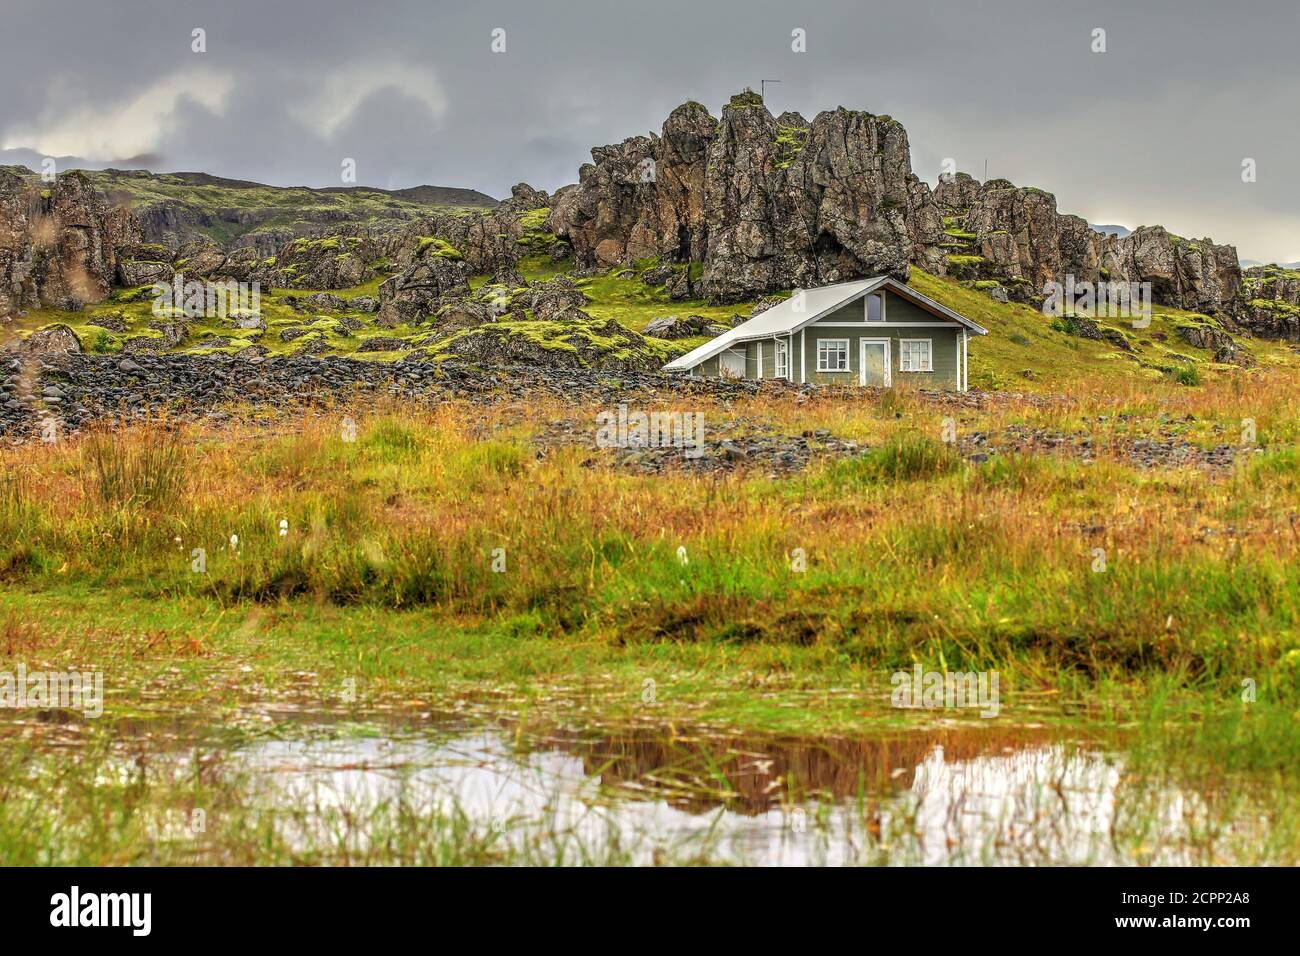 Casa de madera remota en paisaje escénico en el sur de Islandia. Foto de stock